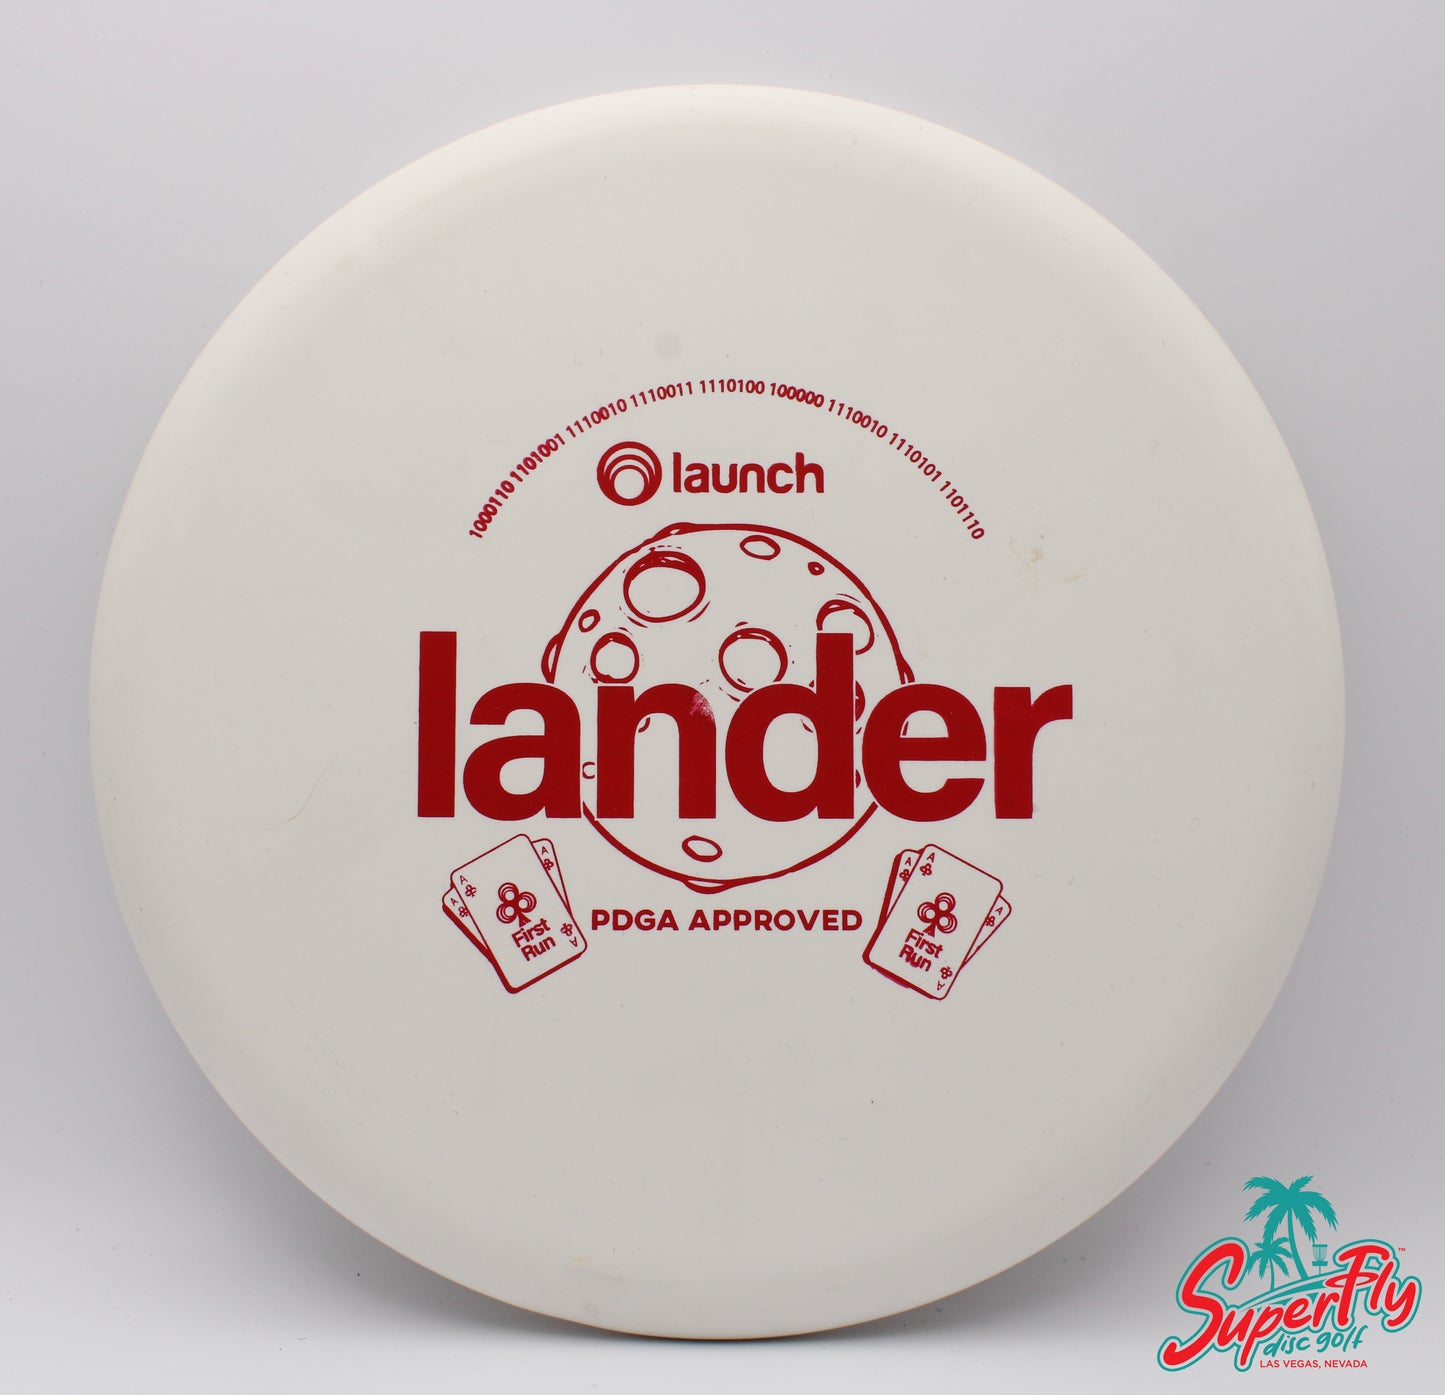 Launch Omega Lander